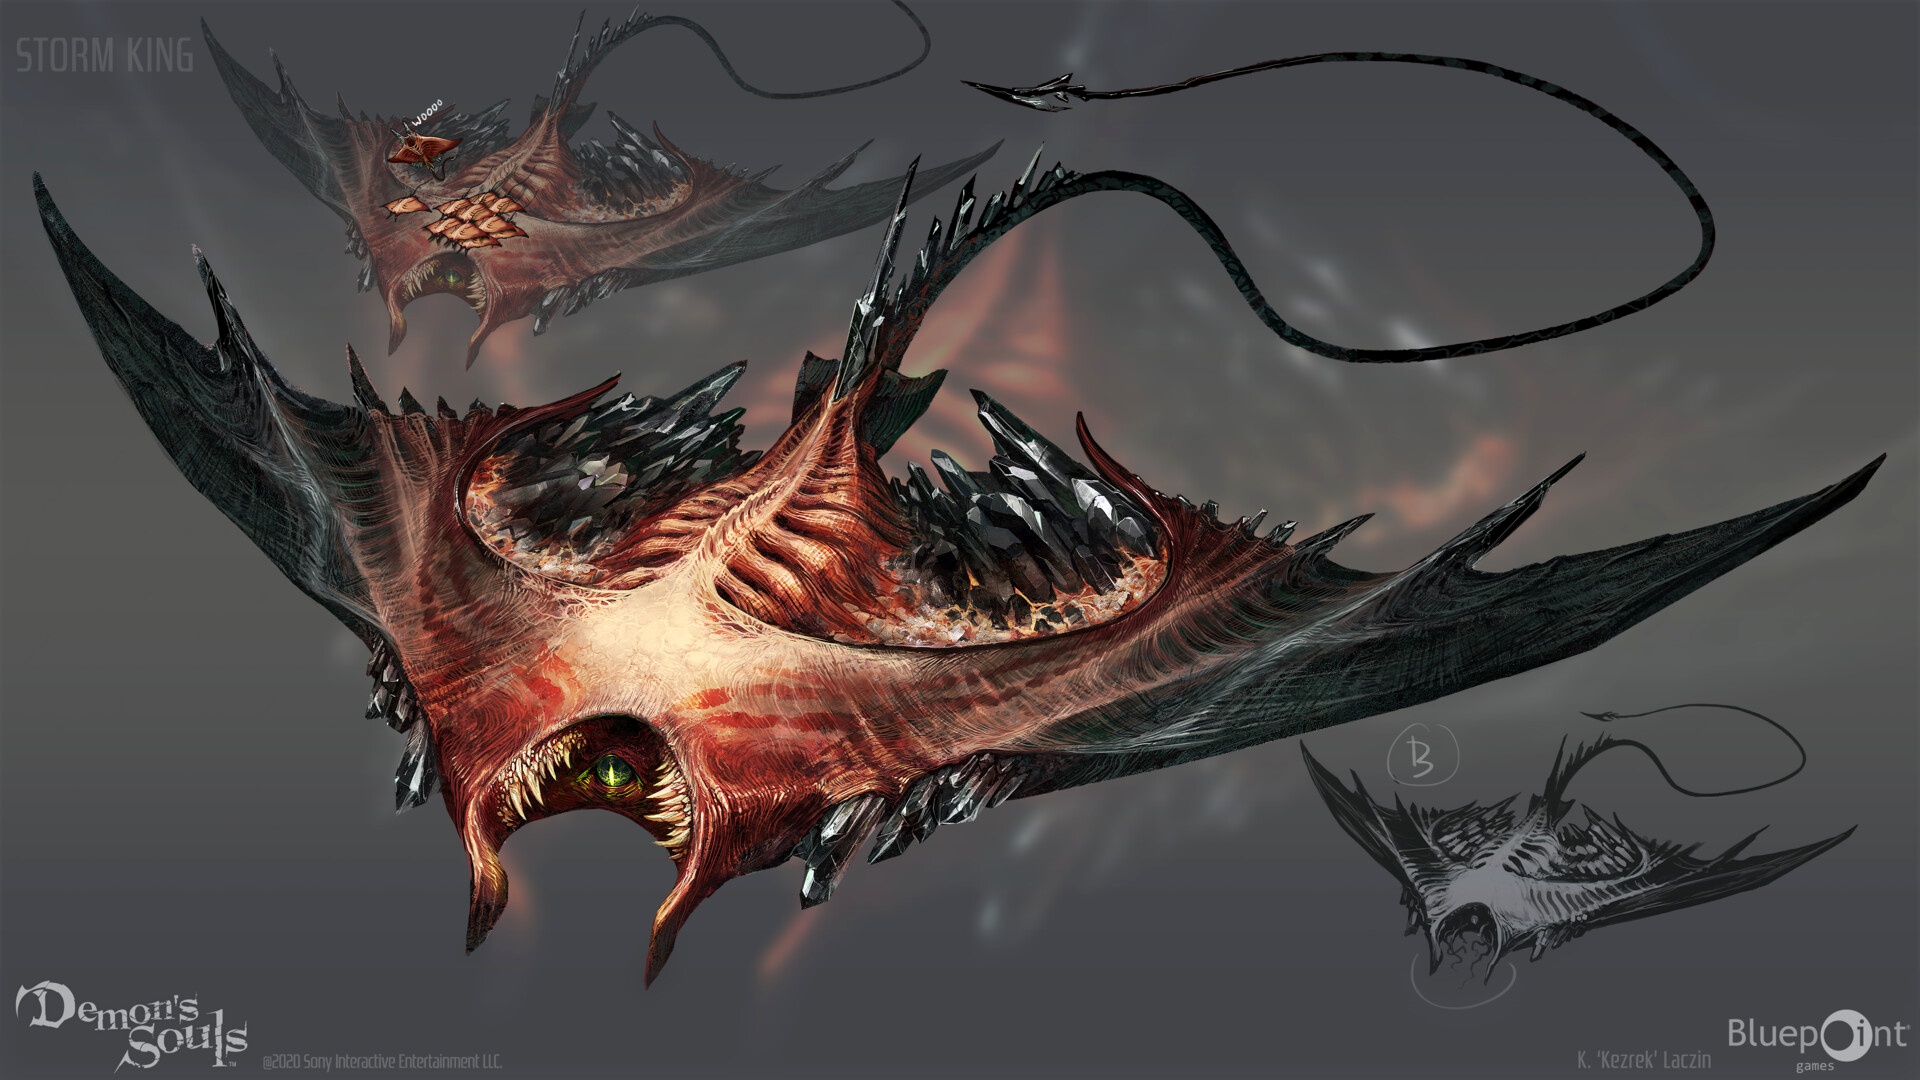 Концепт-арты Demon's Souls: монстры, локации, катсцены и персонажи.